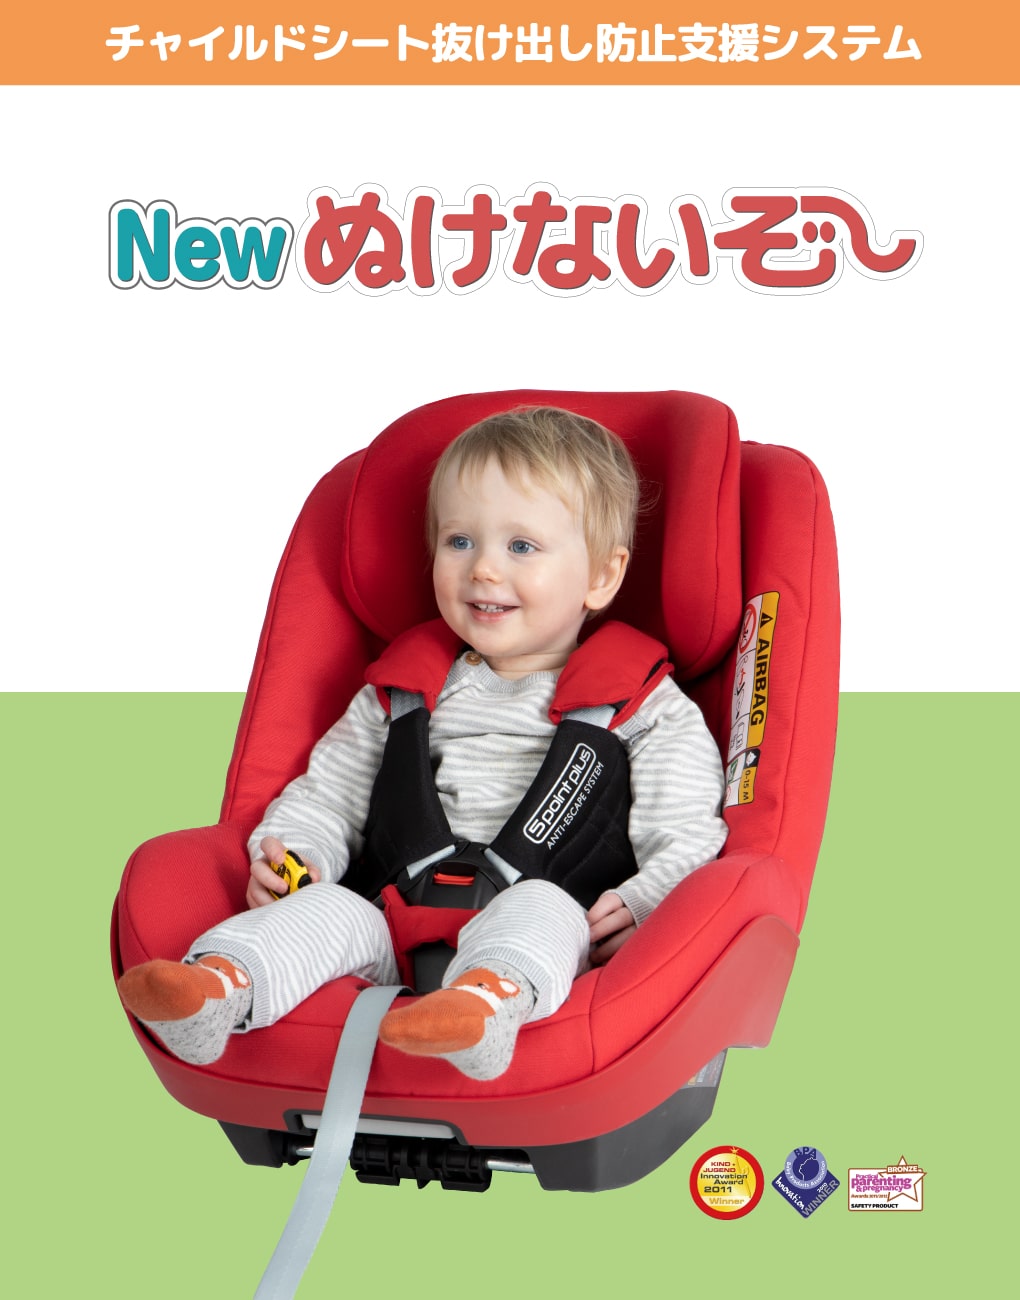 New ぬけないぞー：チャイルドシート抜け出し防止支援システム | チャイルドシート補助用品 | 日本育児：ベビーのために世界から